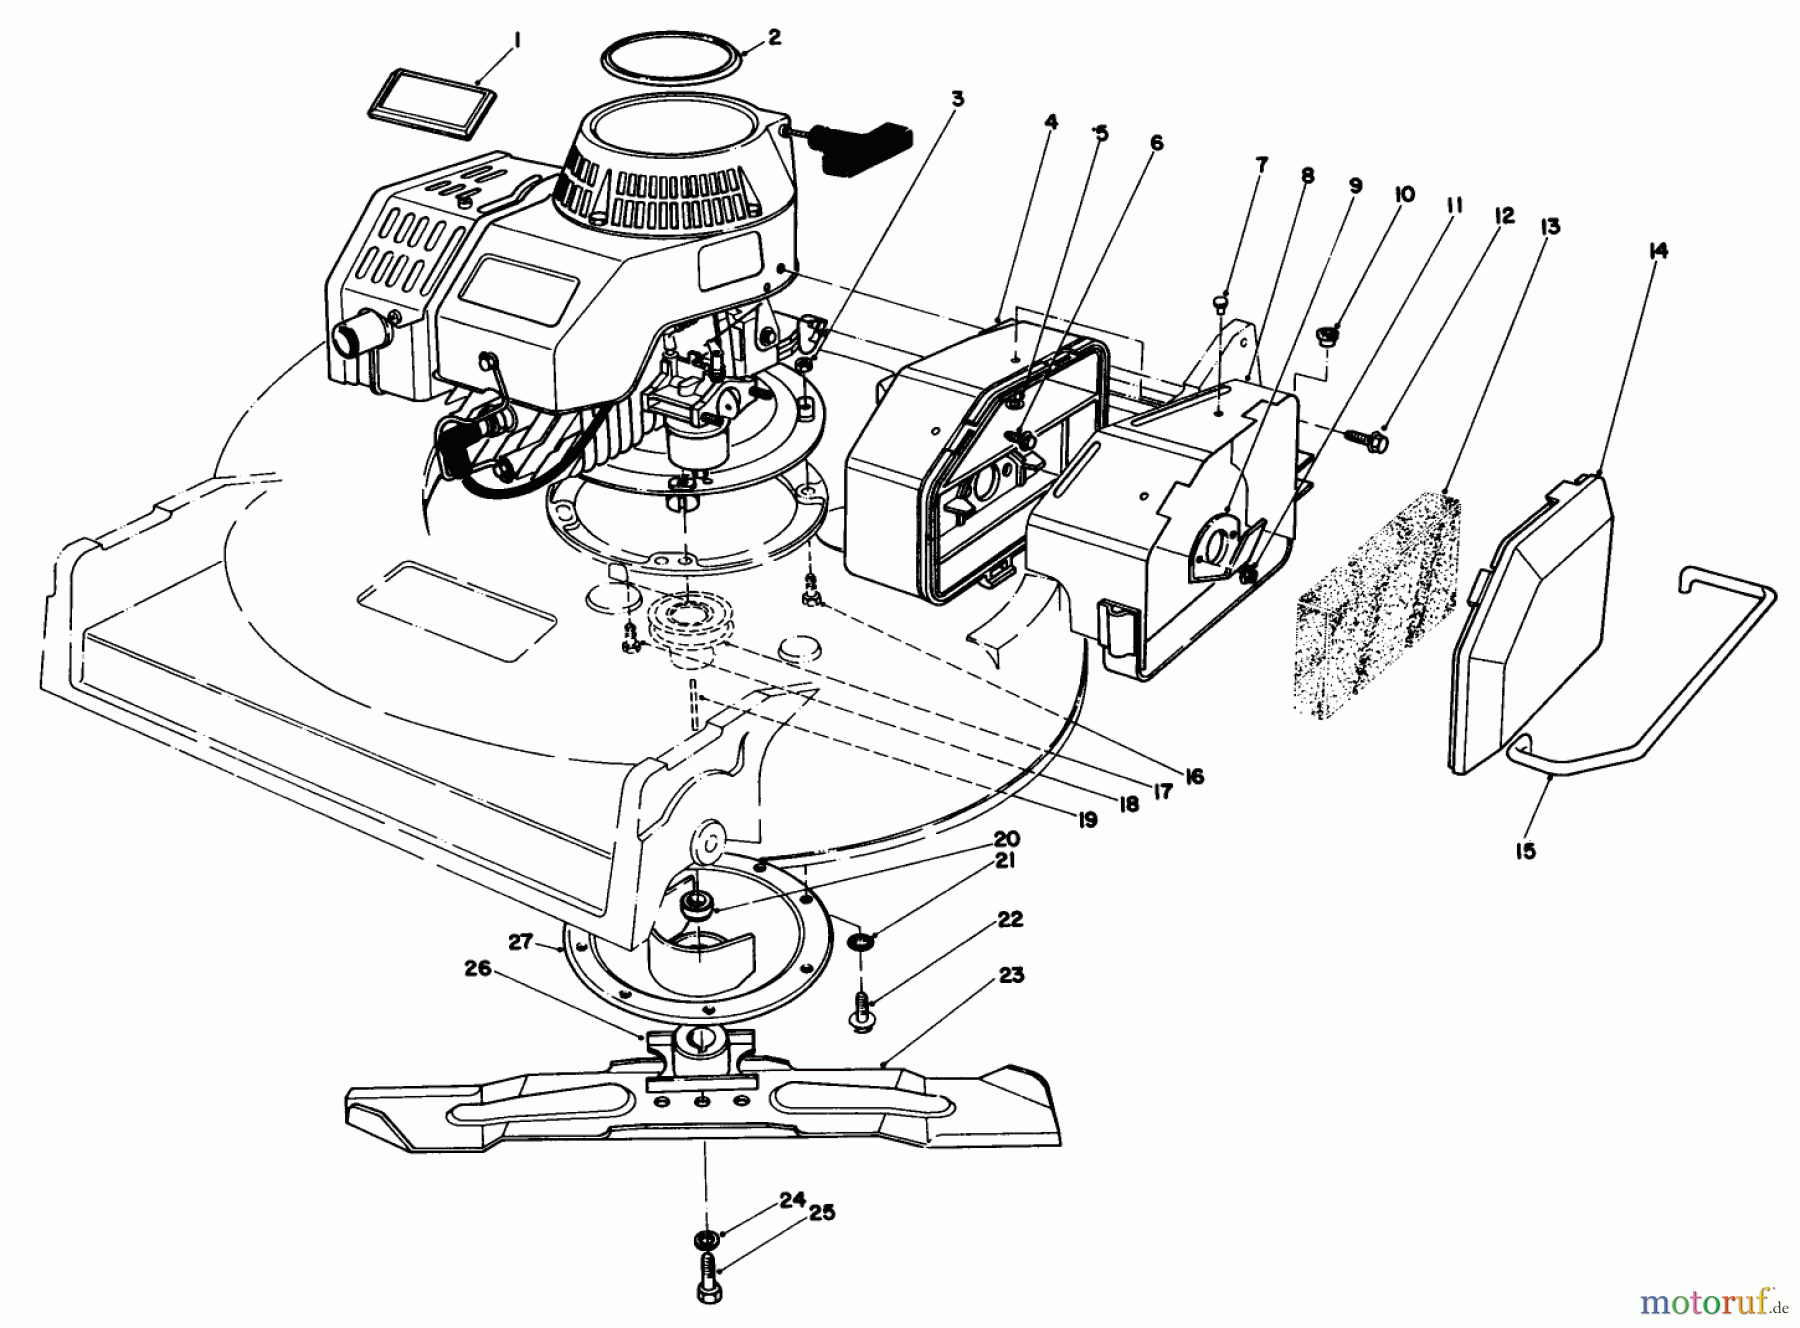  Toro Neu Mowers, Walk-Behind Seite 2 22030 - Toro Lawnmower, 1985 (5000001-5999999) ENGINE ASSEMBLY (MODEL 22035)